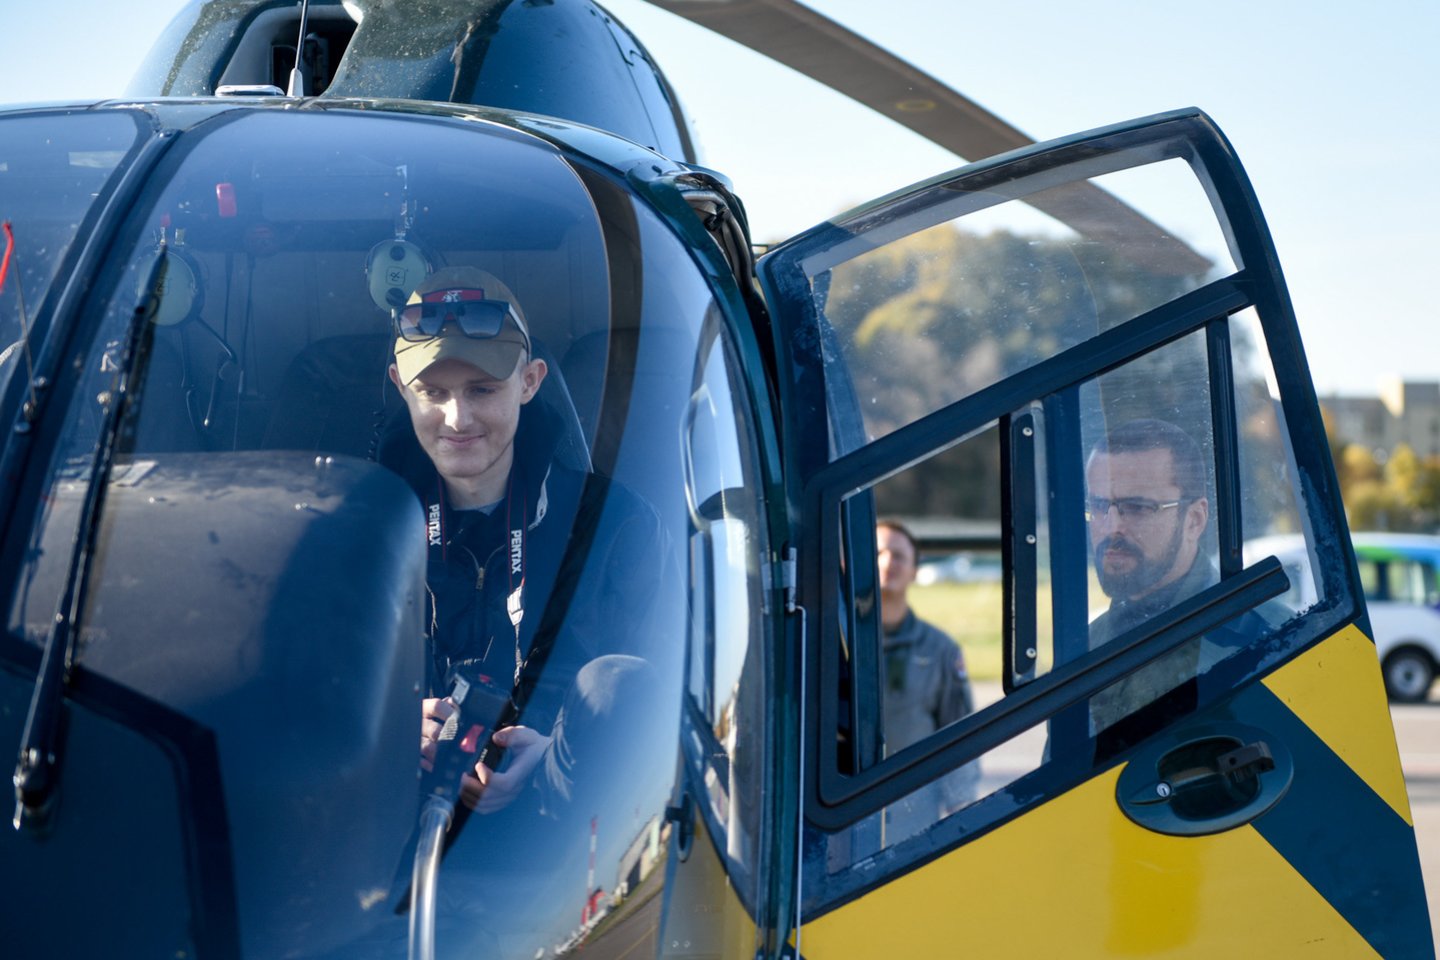  Renginio metu buvo išpildyta Ernesto svajonė paskraidyti sraigtasparniu. <br> D.Umbraso nuotr. 